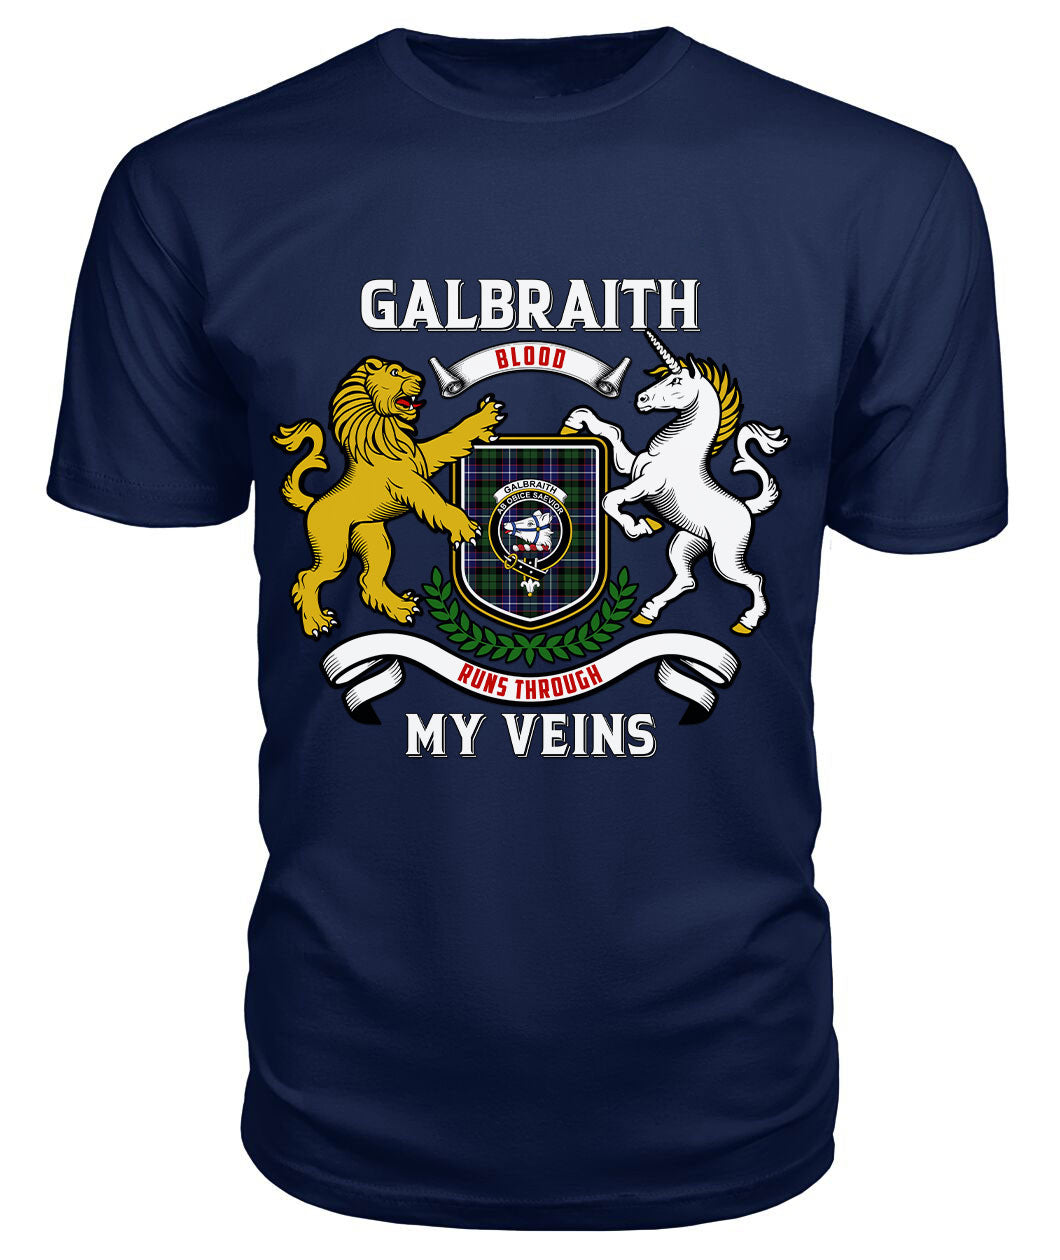 Galbraith Modern Tartan Crest 2D T-shirt - Blood Runs Through My Veins Style